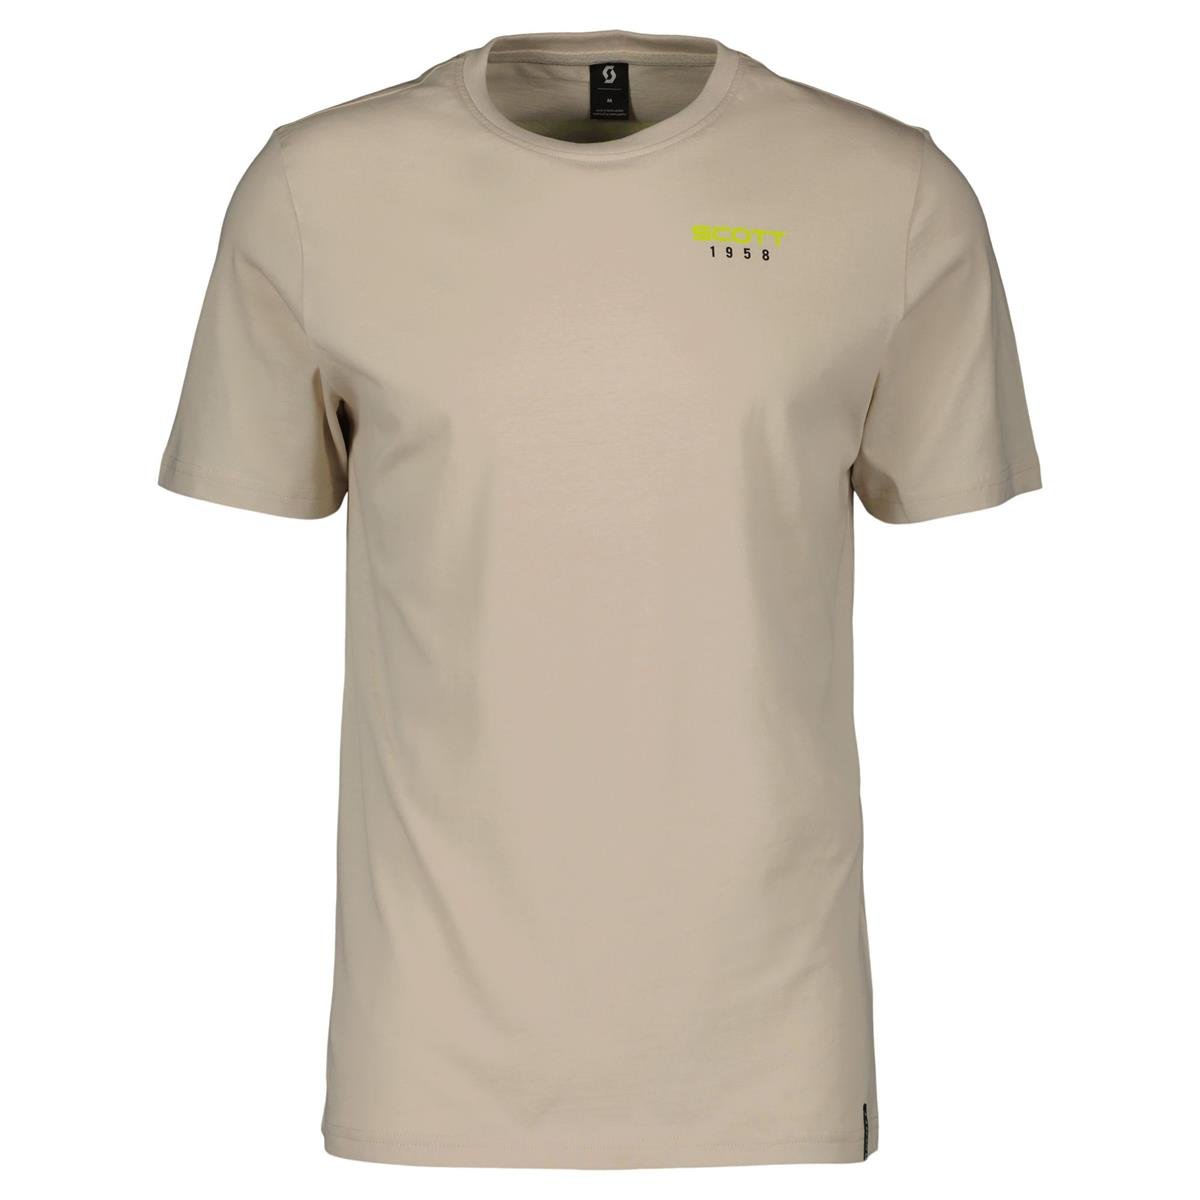 Scott T-Shirt Retro Dust White